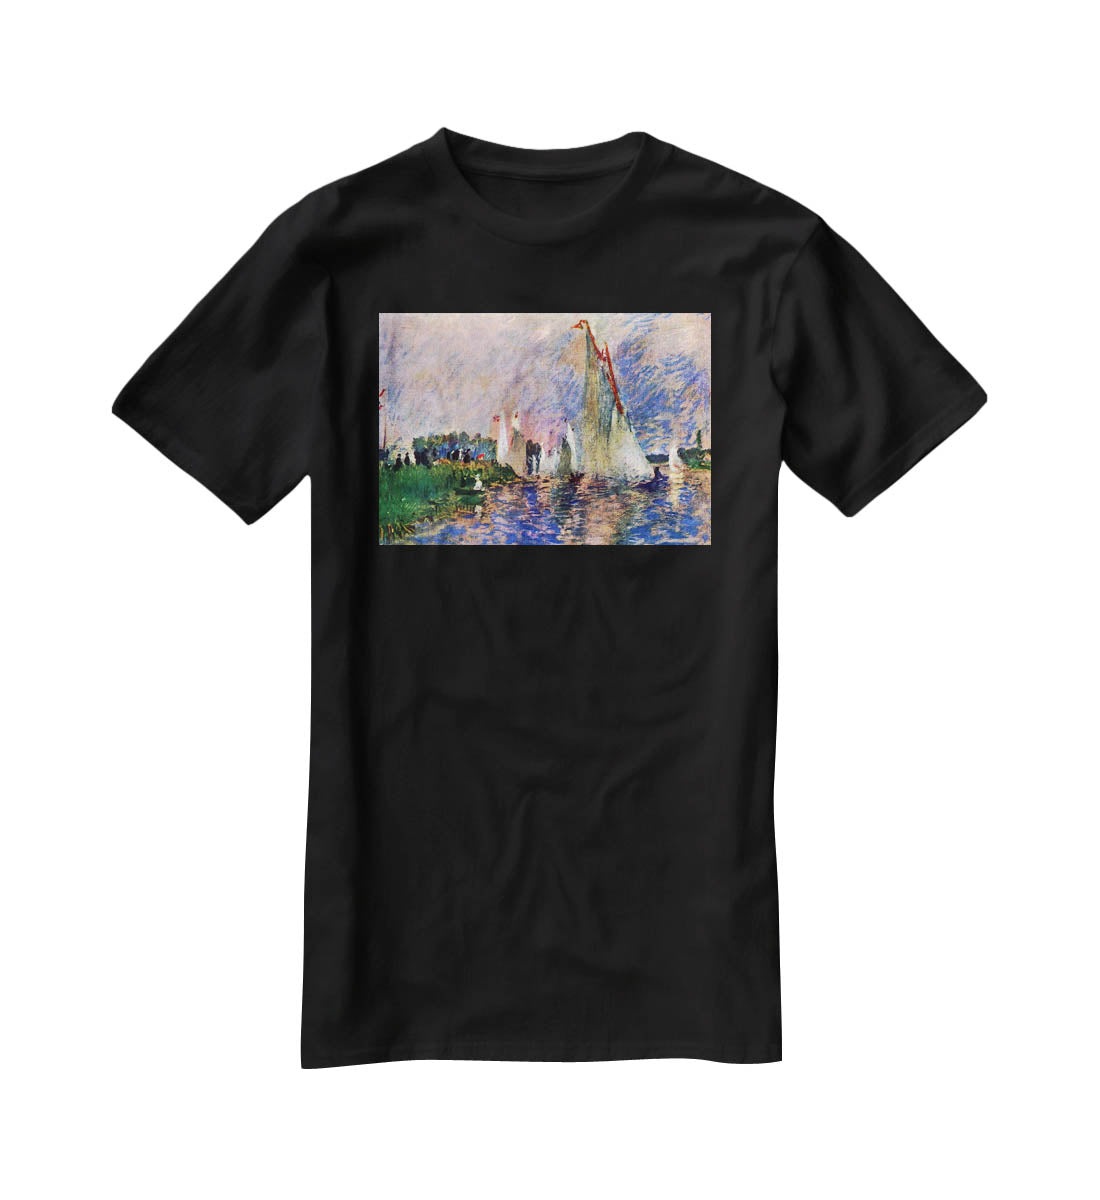 Regatta in Argenteuil by Renoir T-Shirt - Canvas Art Rocks - 1